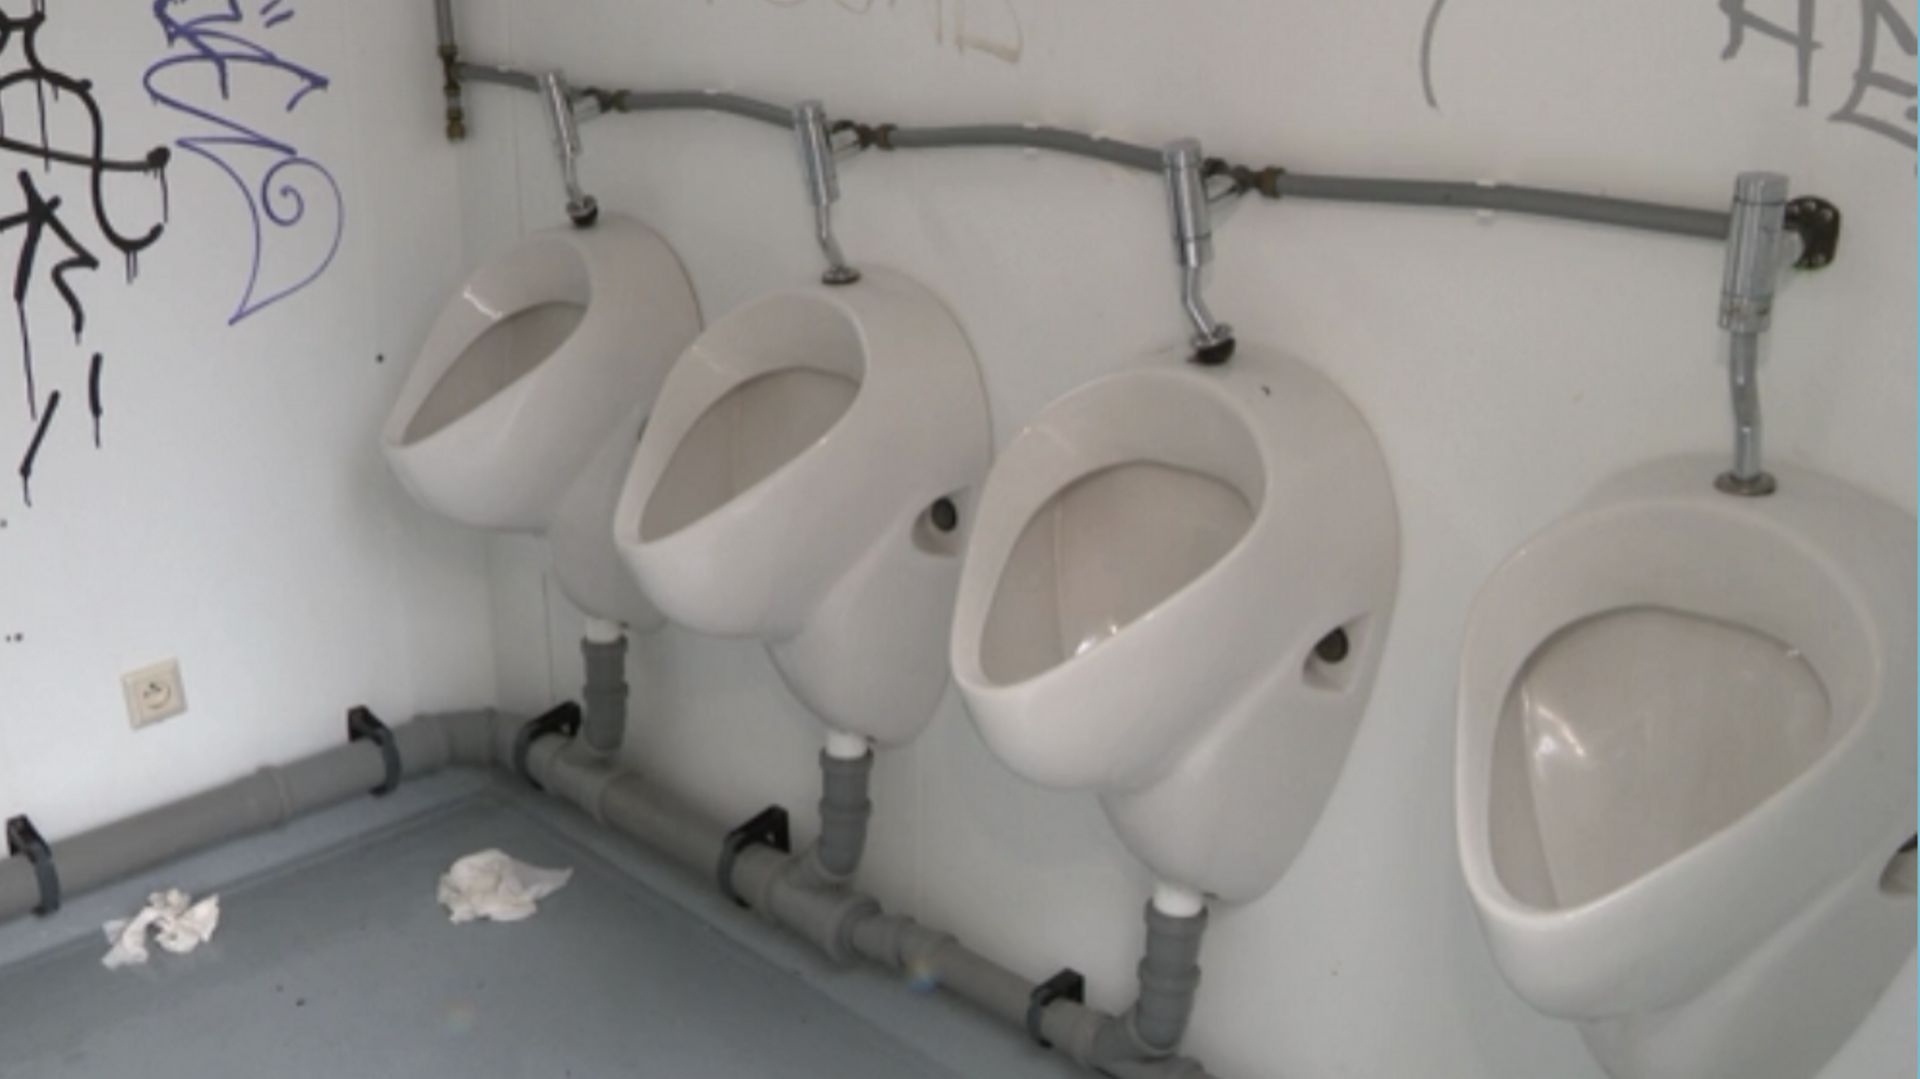 peesy-l-application-qui-recense-les-toilettes-publiques-bruxelloises